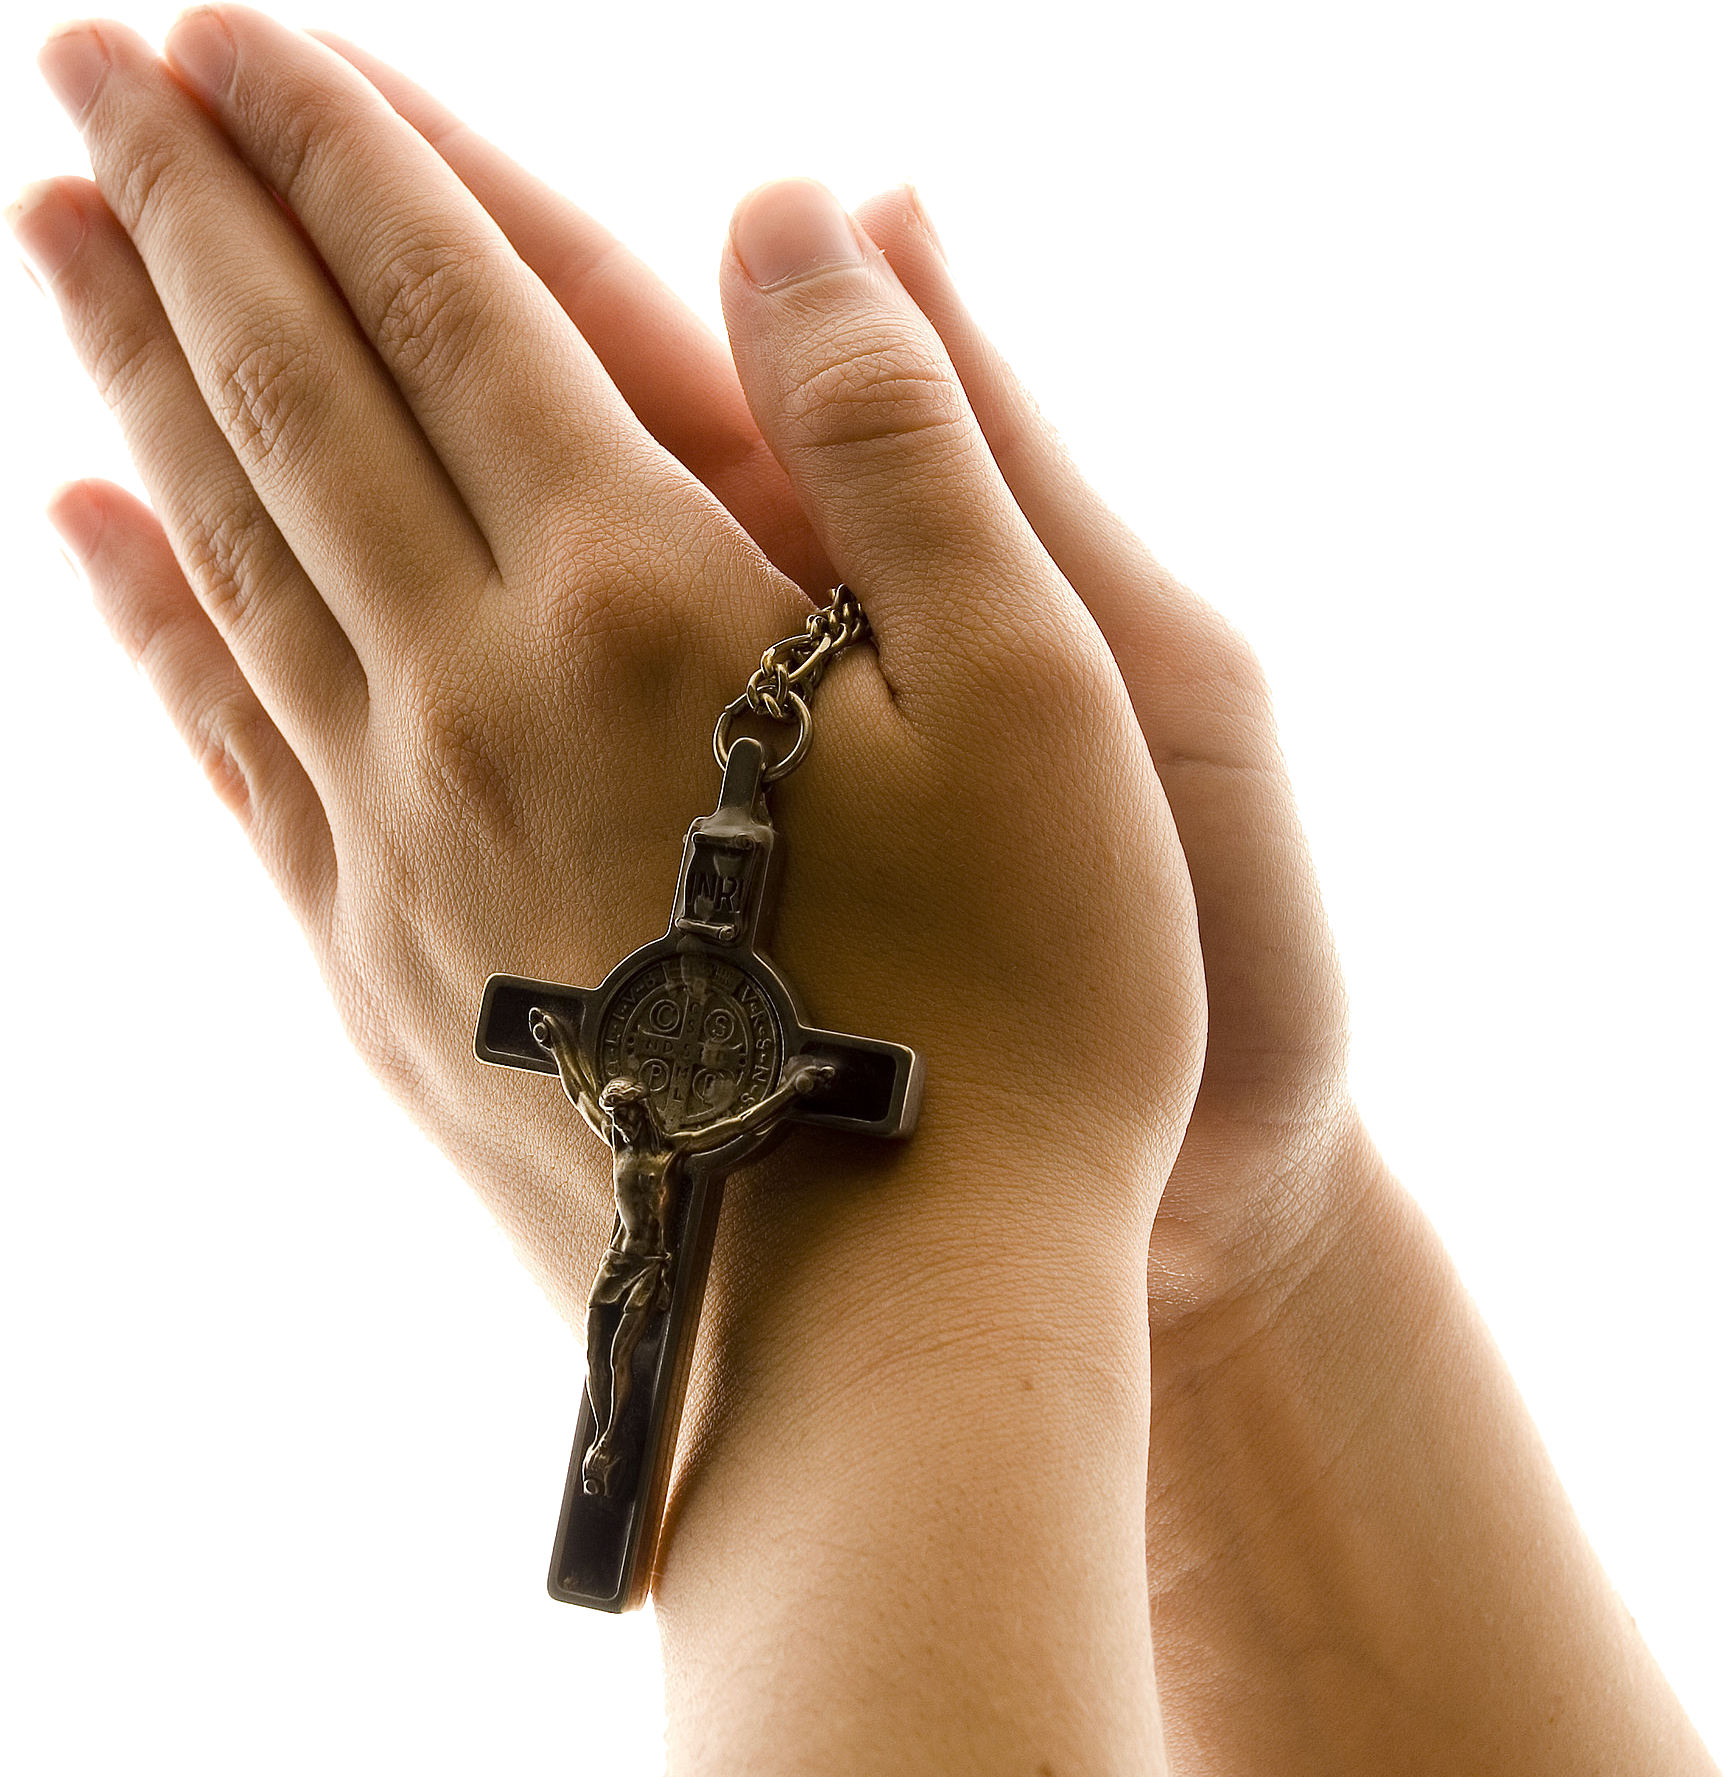 Modlące się ręce